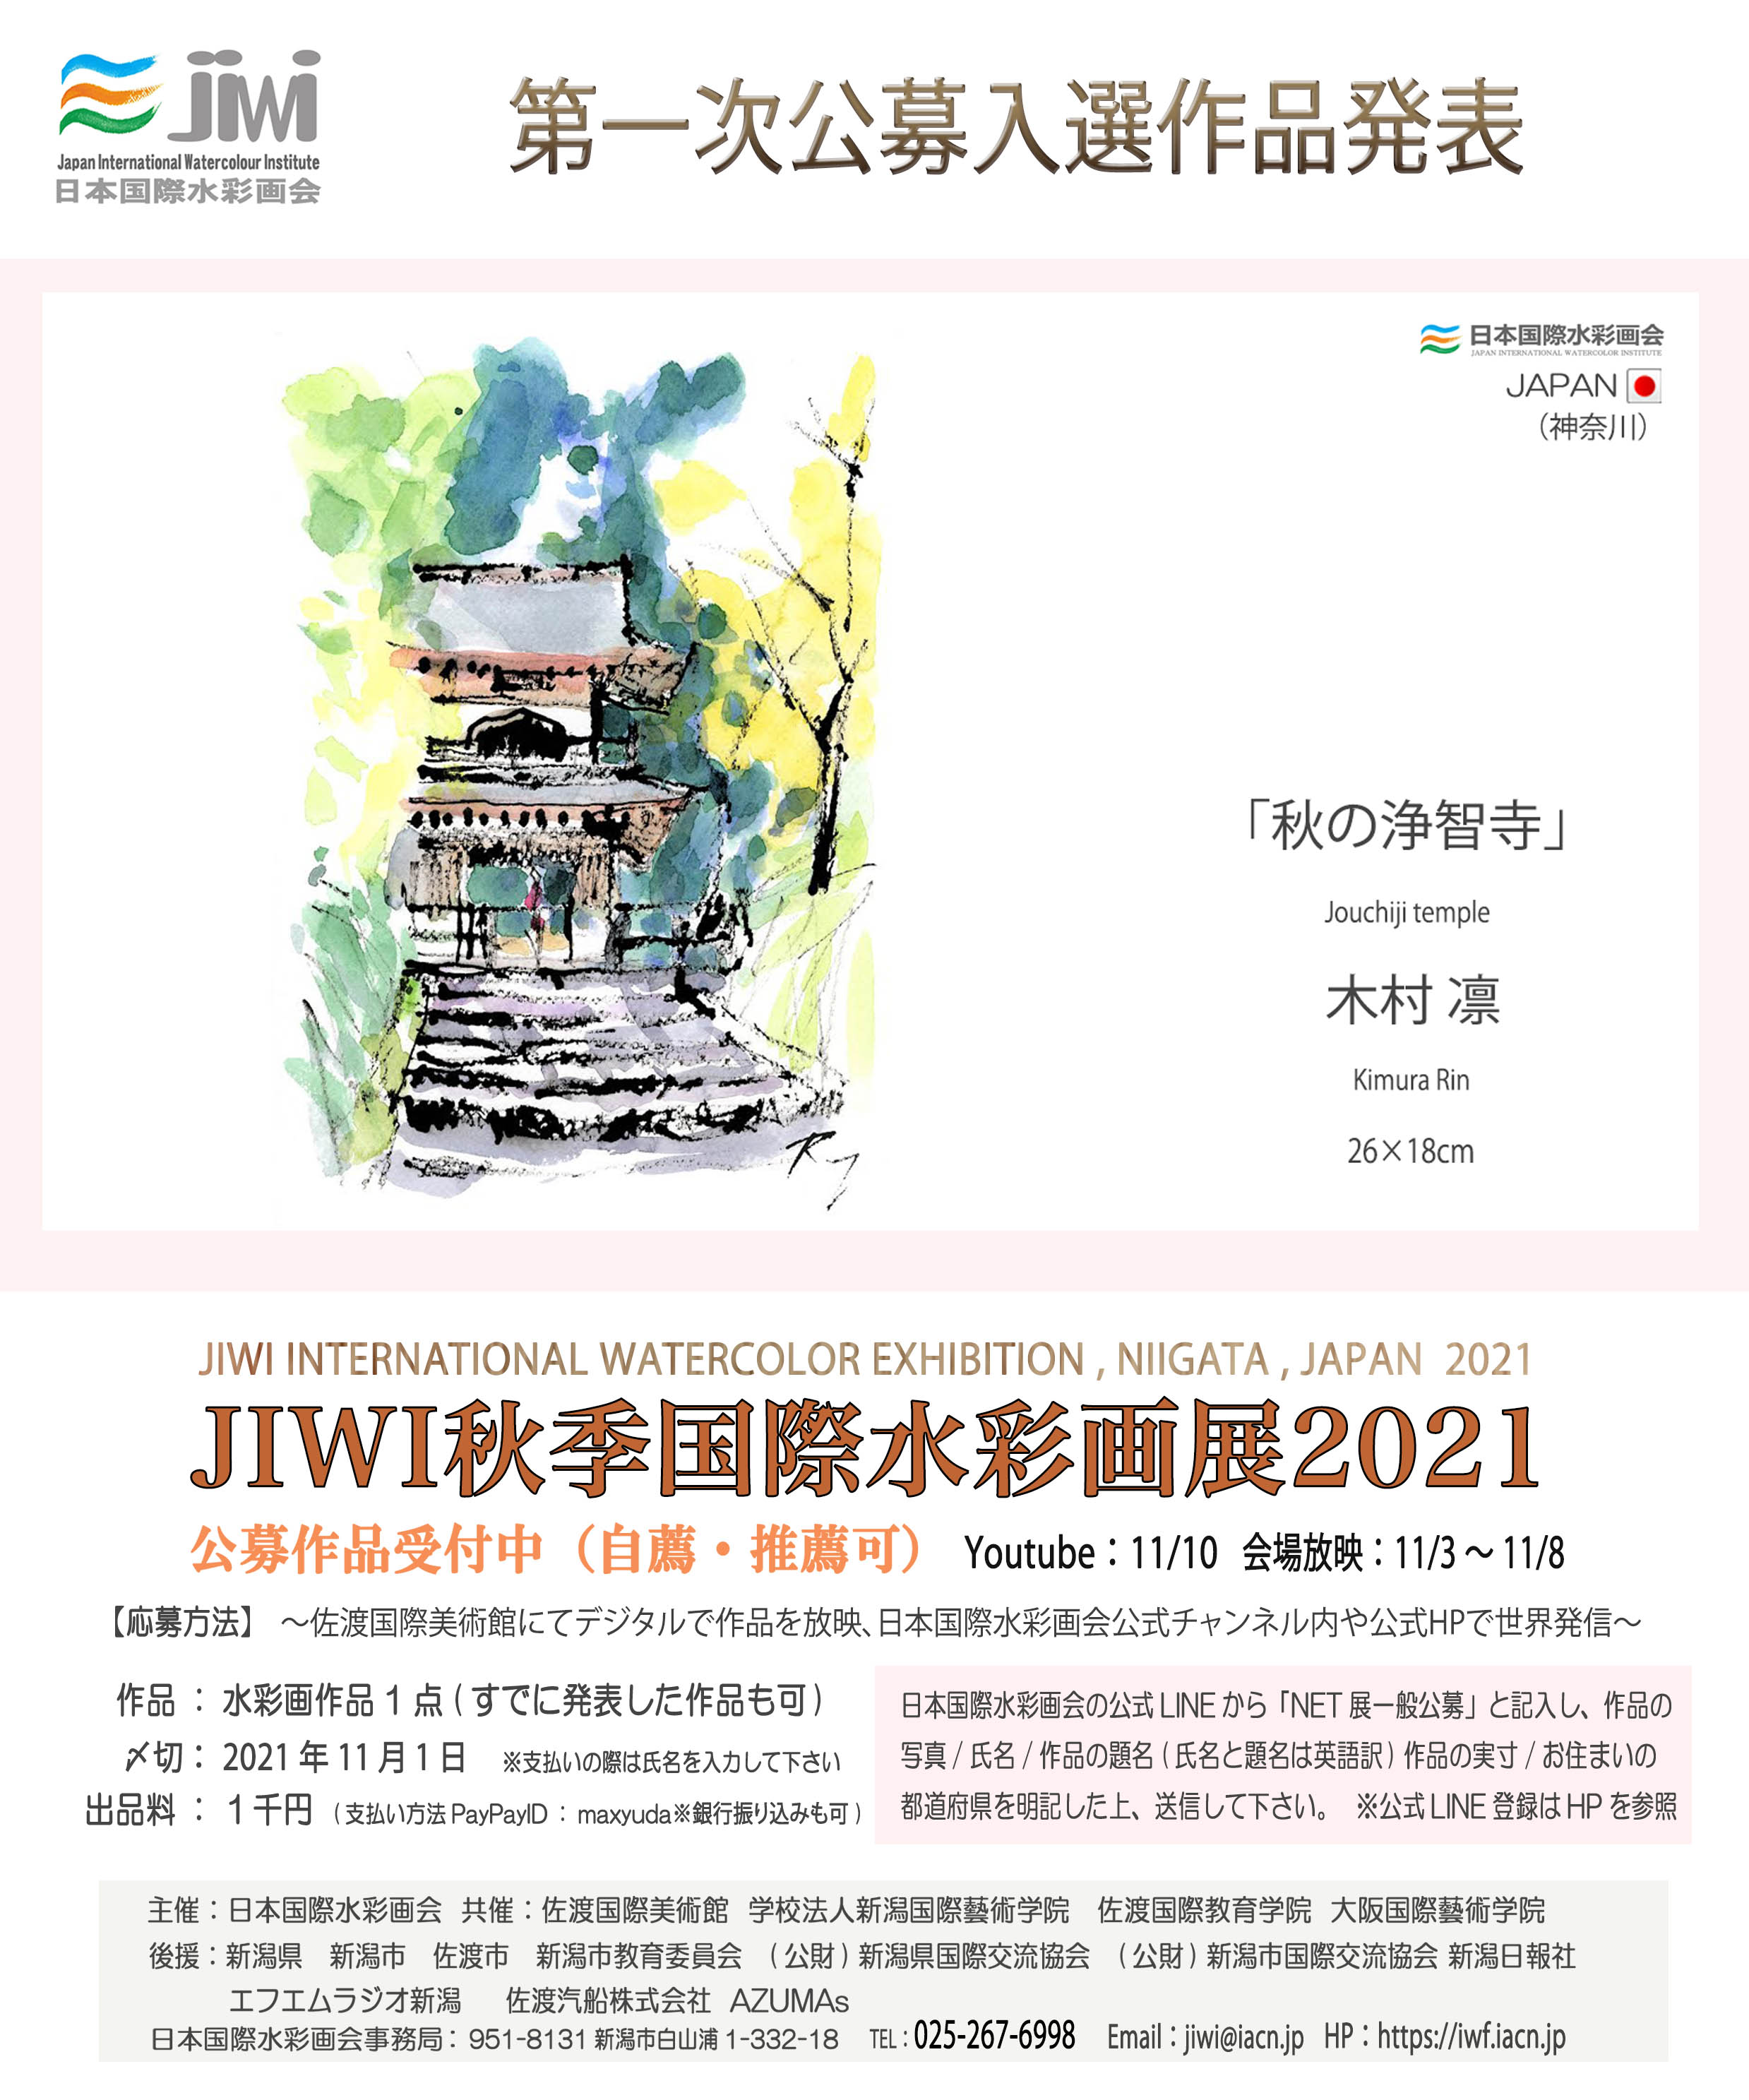 「JIWI秋季国際水彩画展2021」入選のご報告